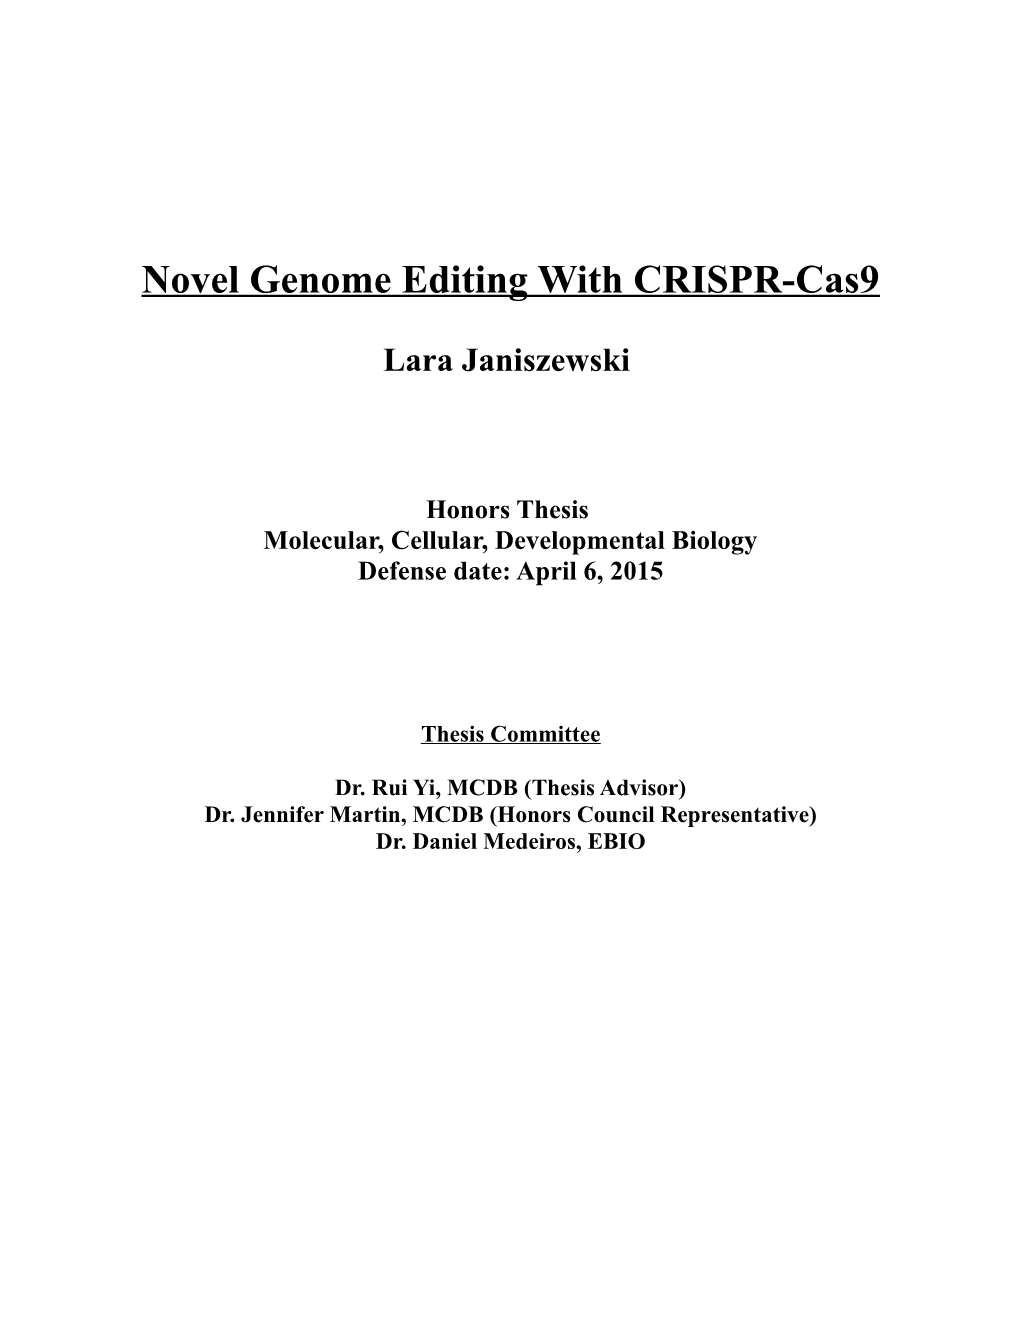 Novel Genome Editing with CRISPR-Cas9